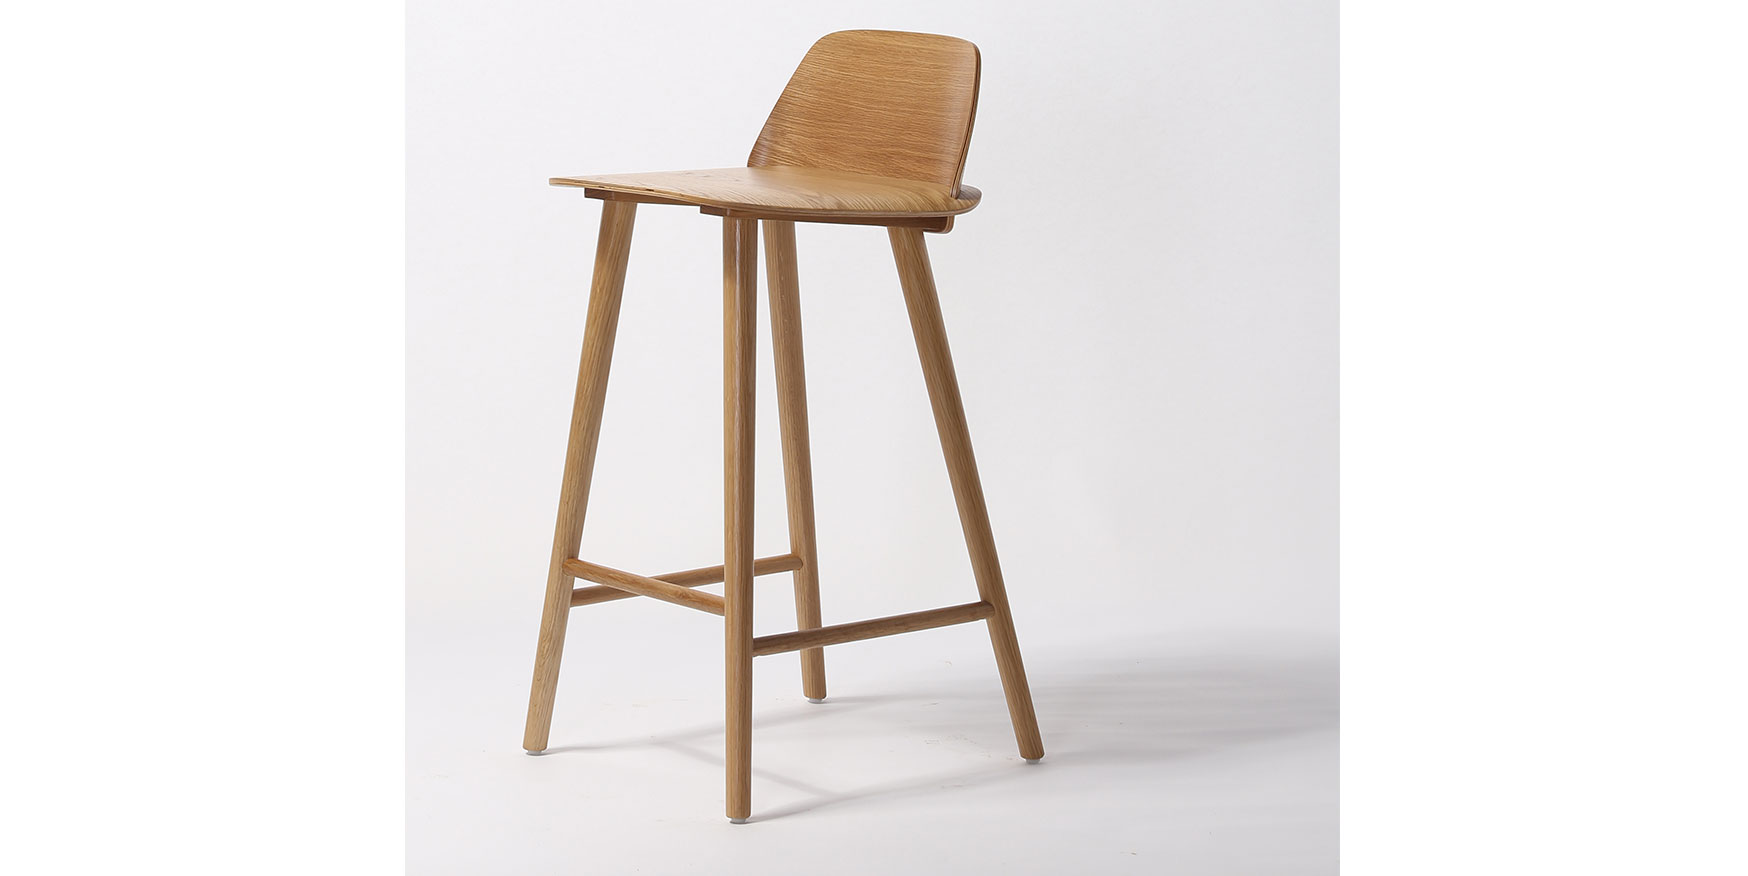 bent wood stool
